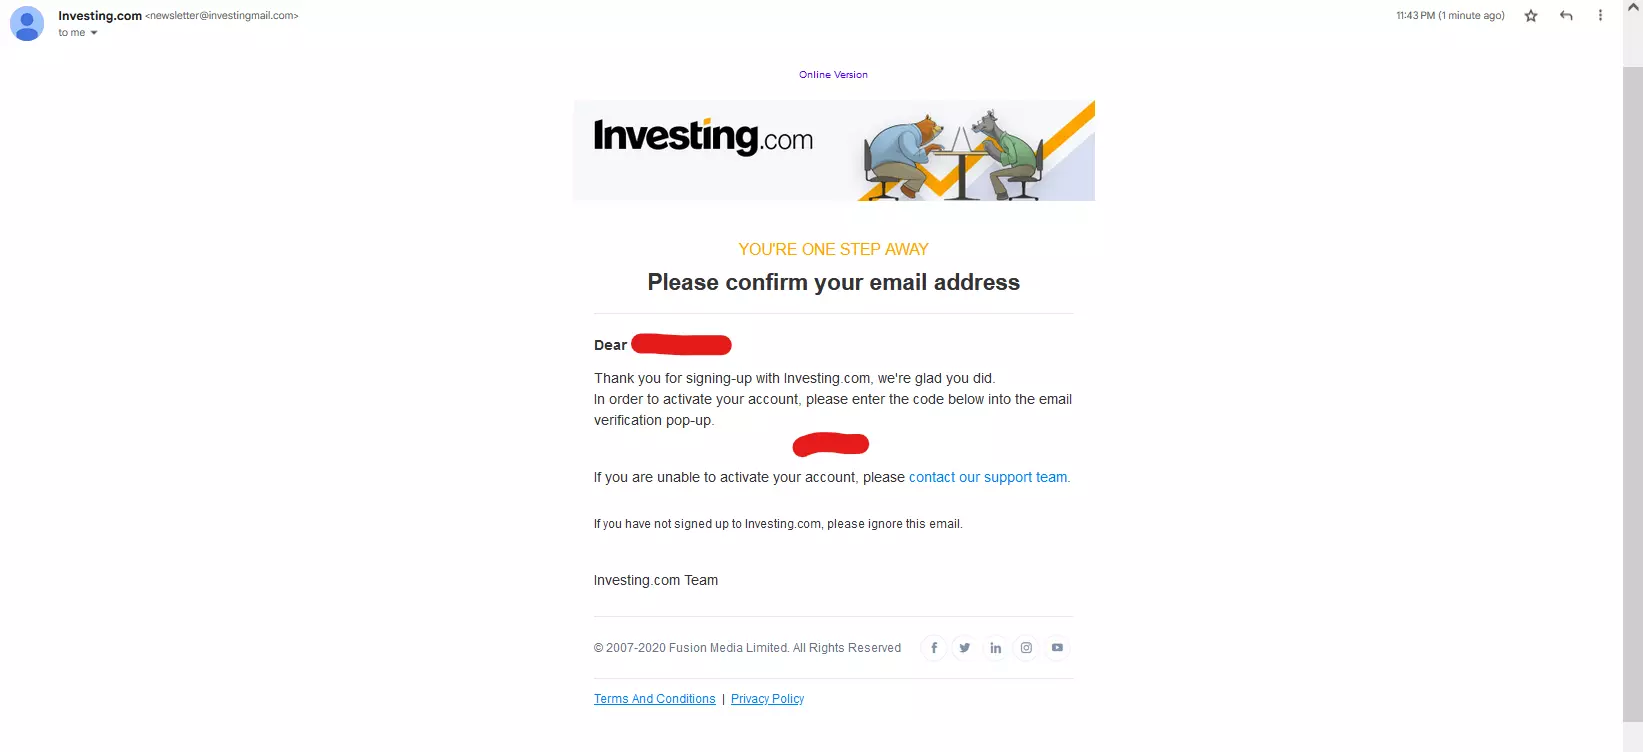 Investing.com registration process